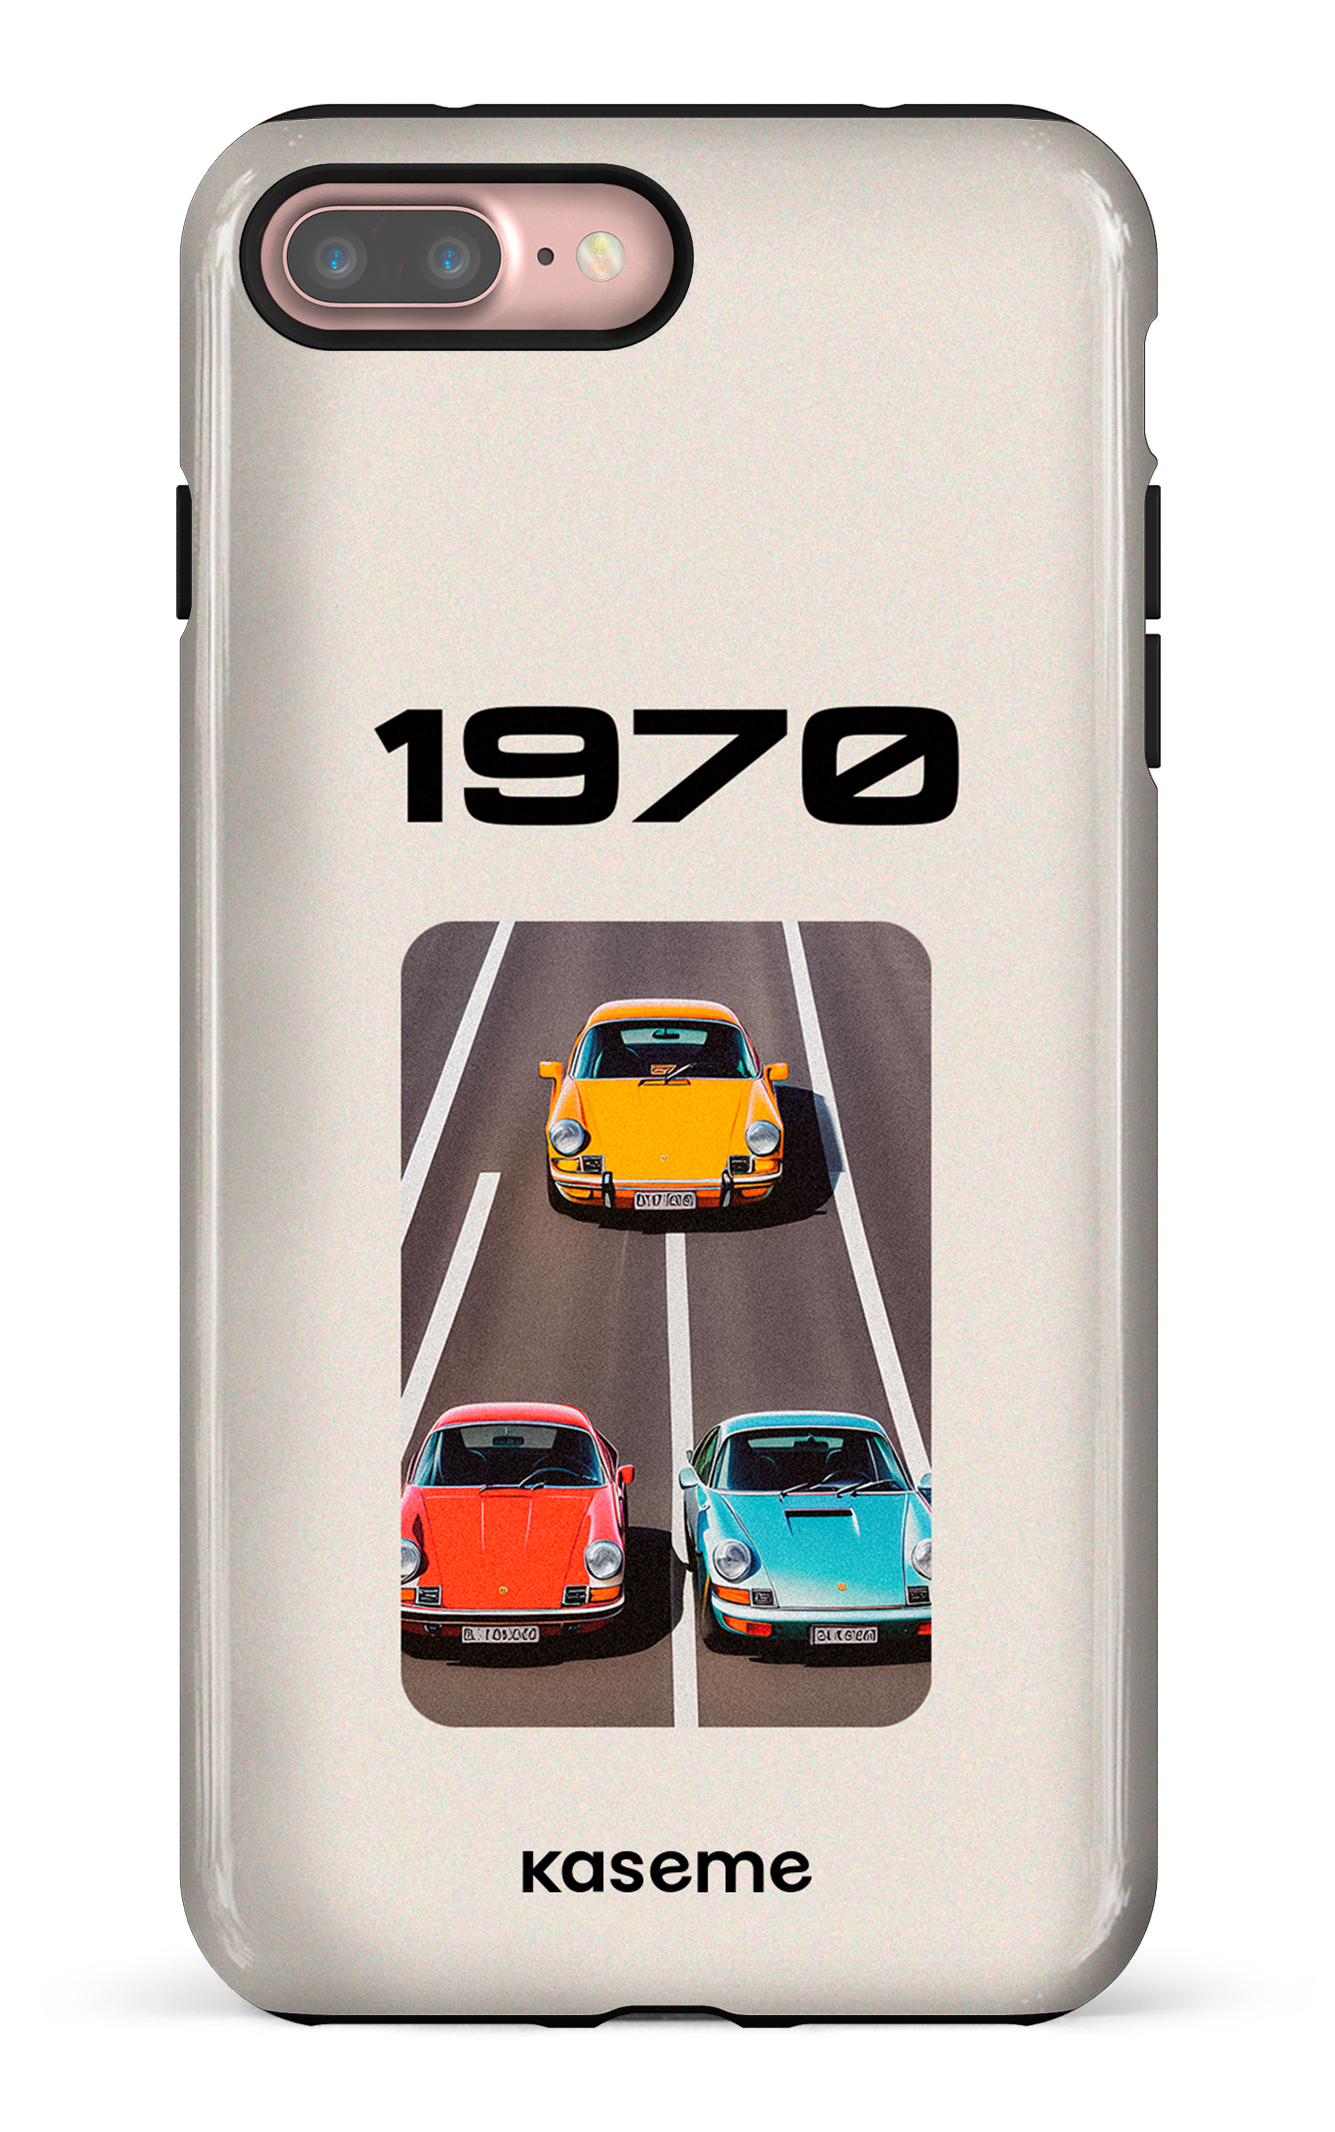 The 1970 - iPhone 7 Plus